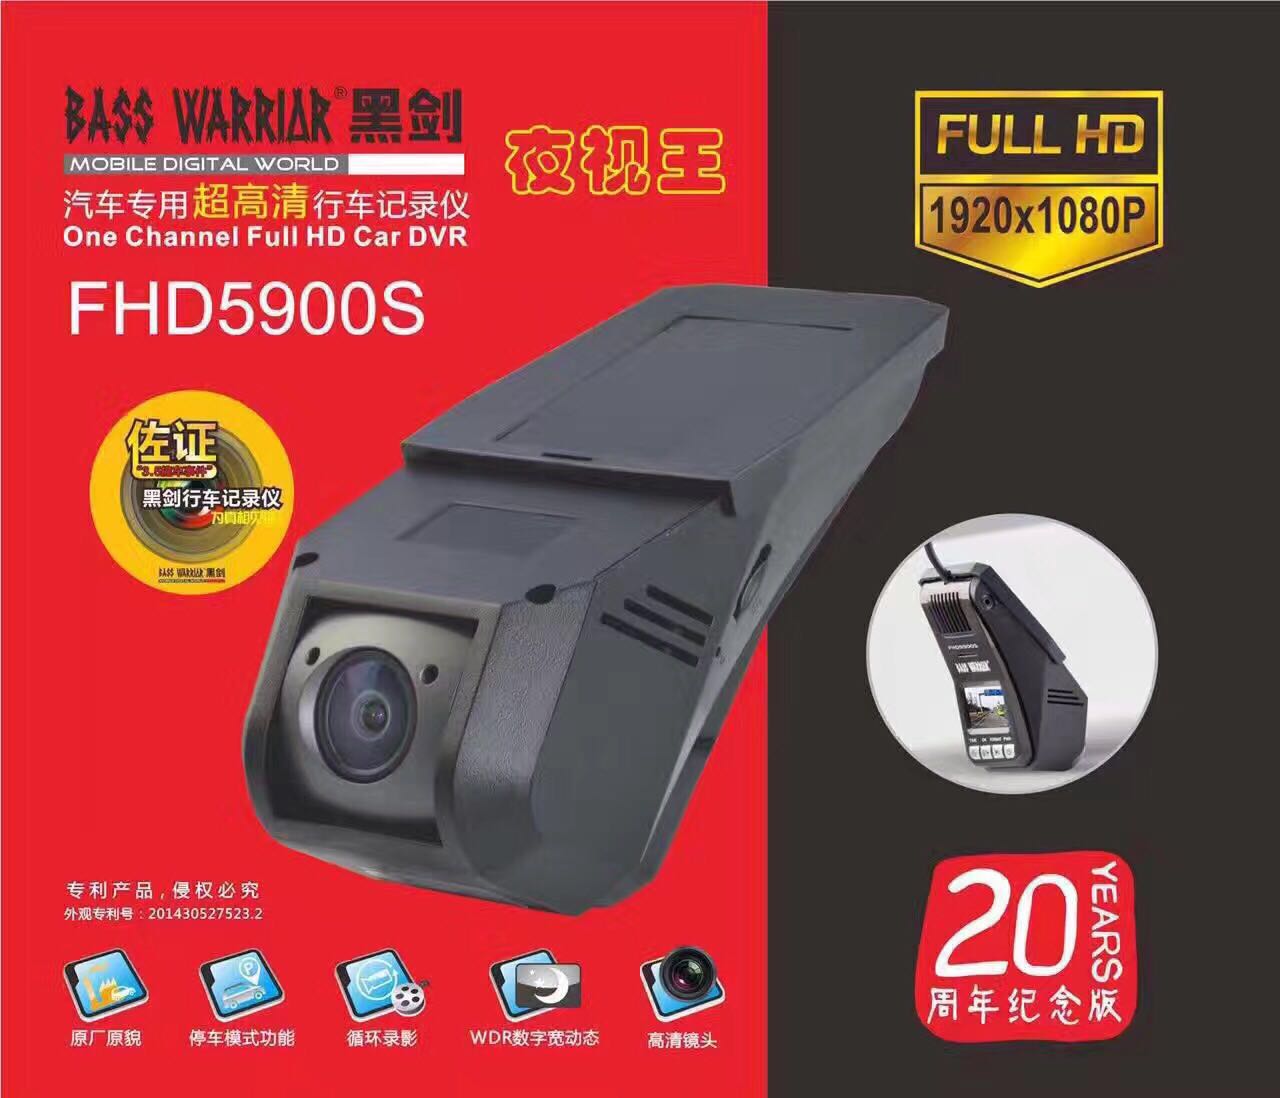 黑剑fhd5900s超清夜视王:  采用1080p美国高清夜视传感器,具有停车